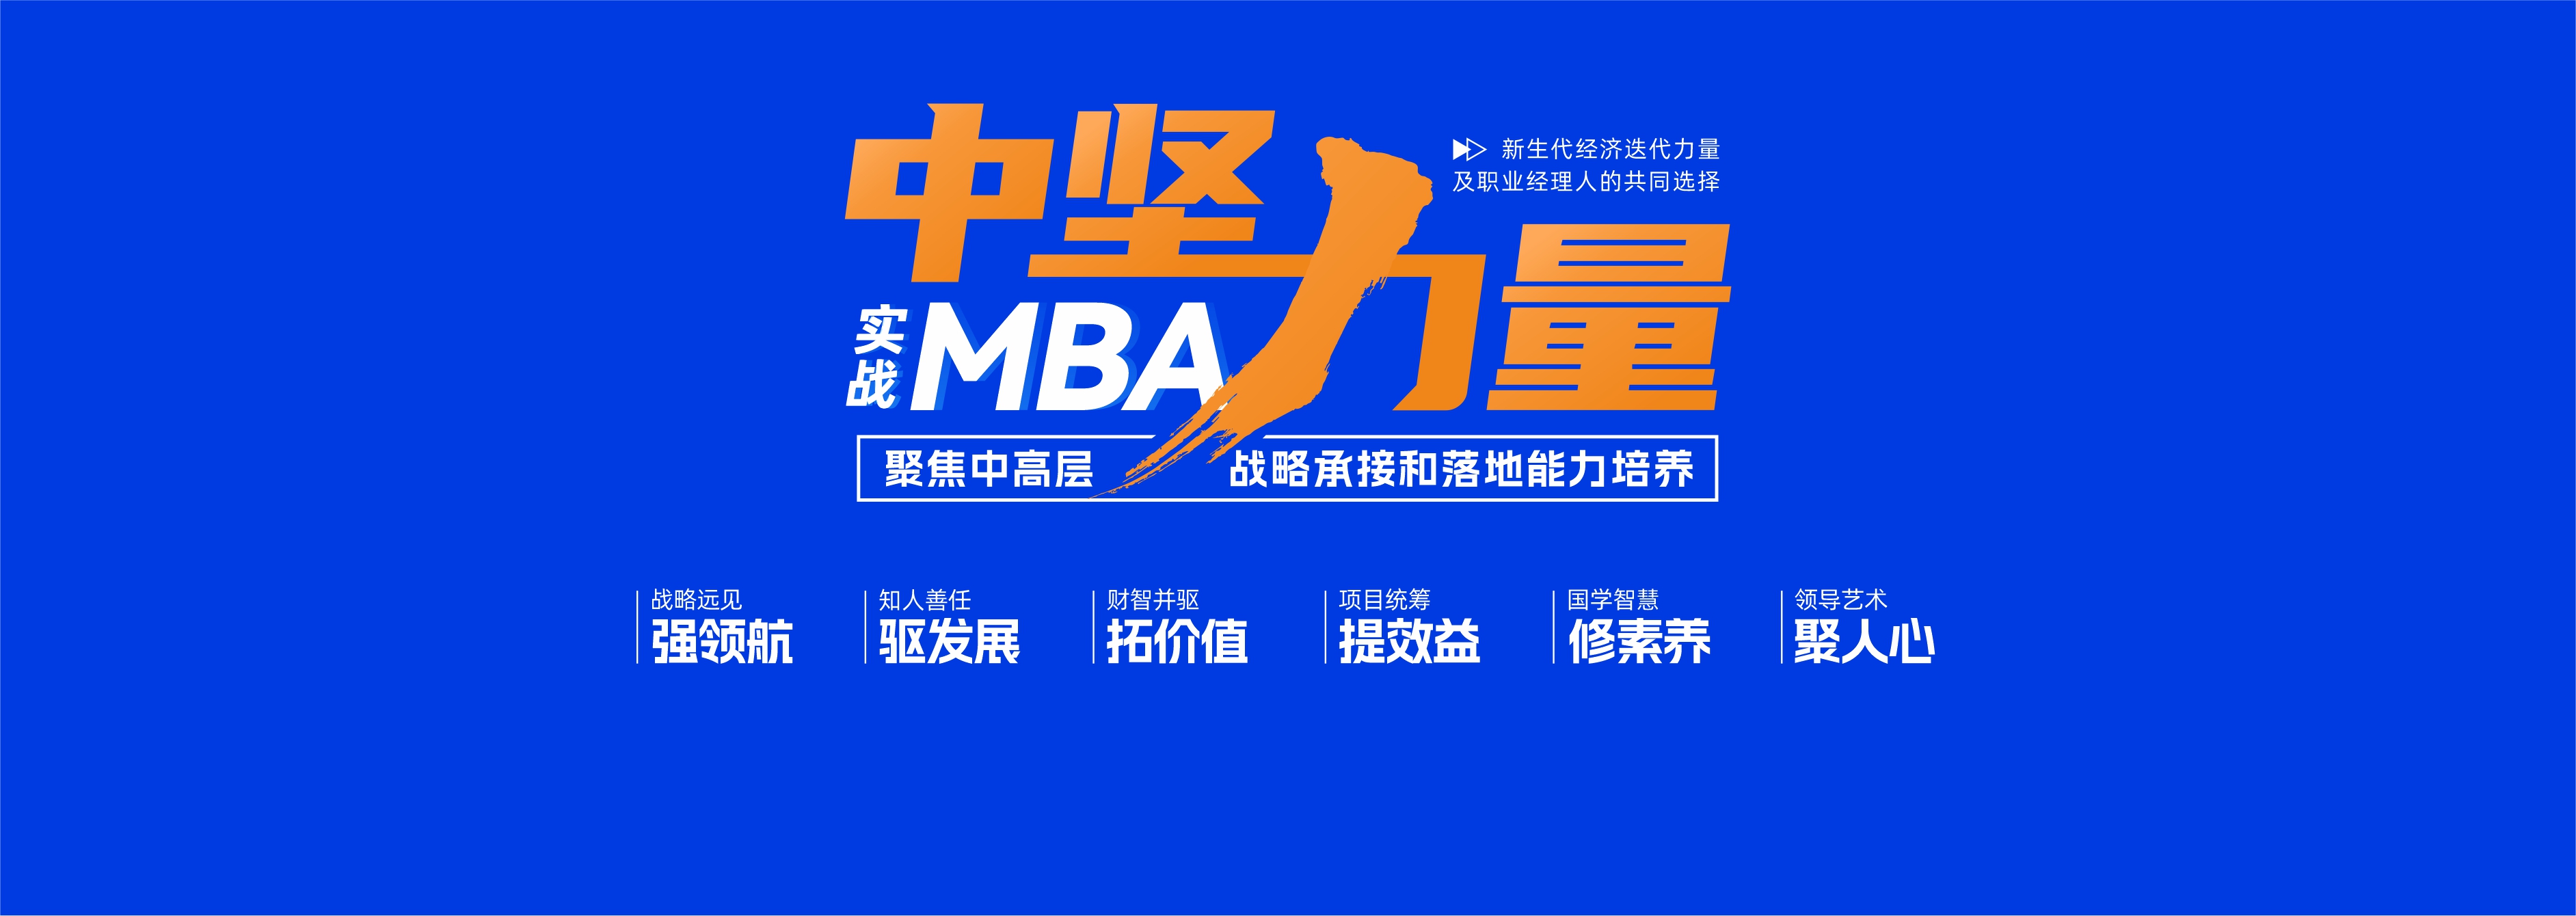 黎之生实战MBA